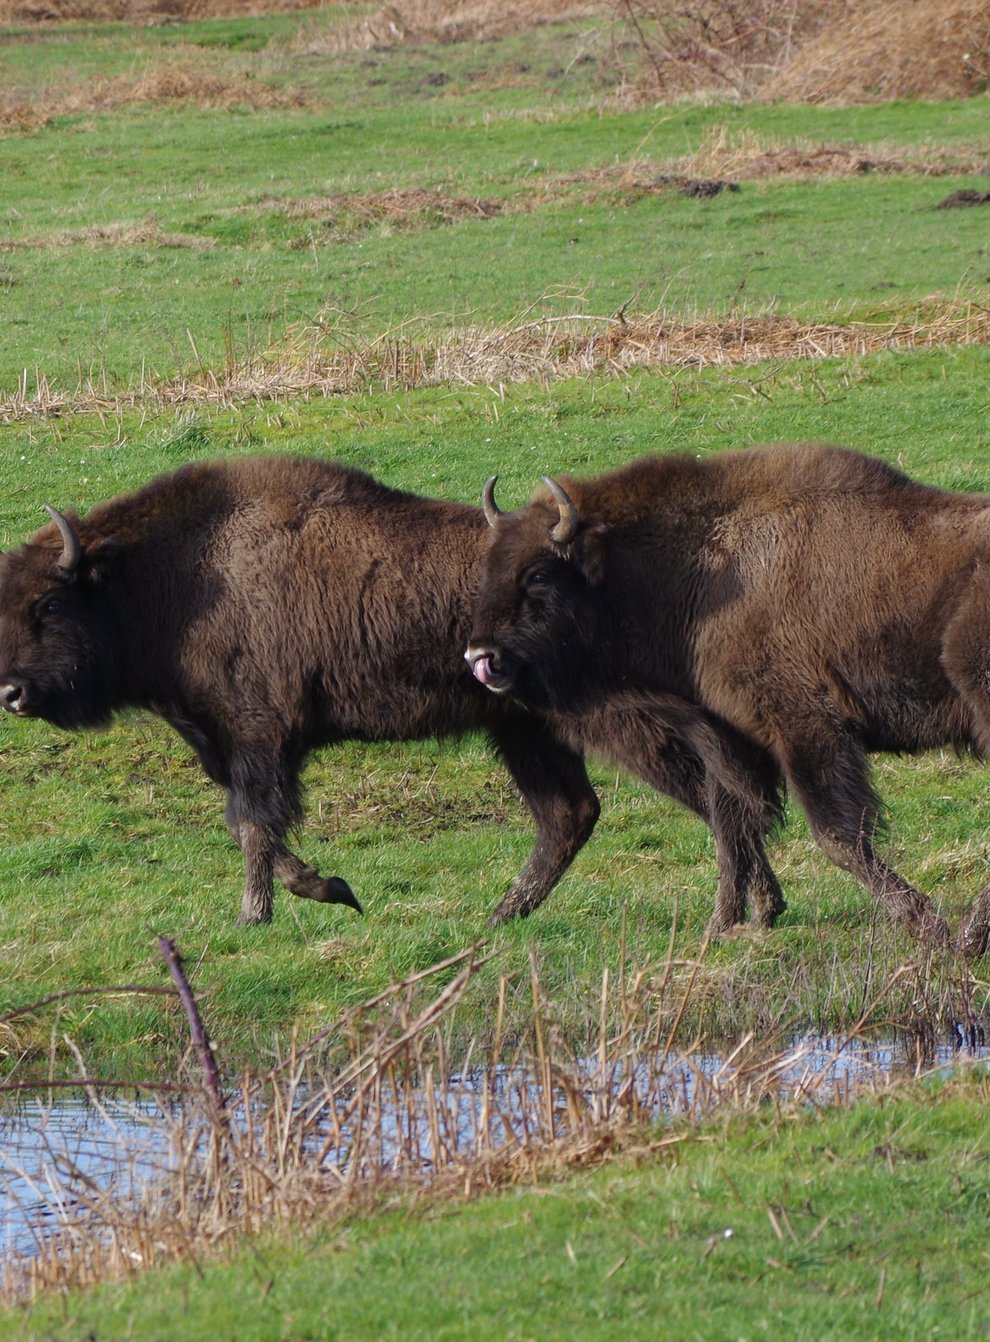 Bison at Slikken van de Heen nature reserve